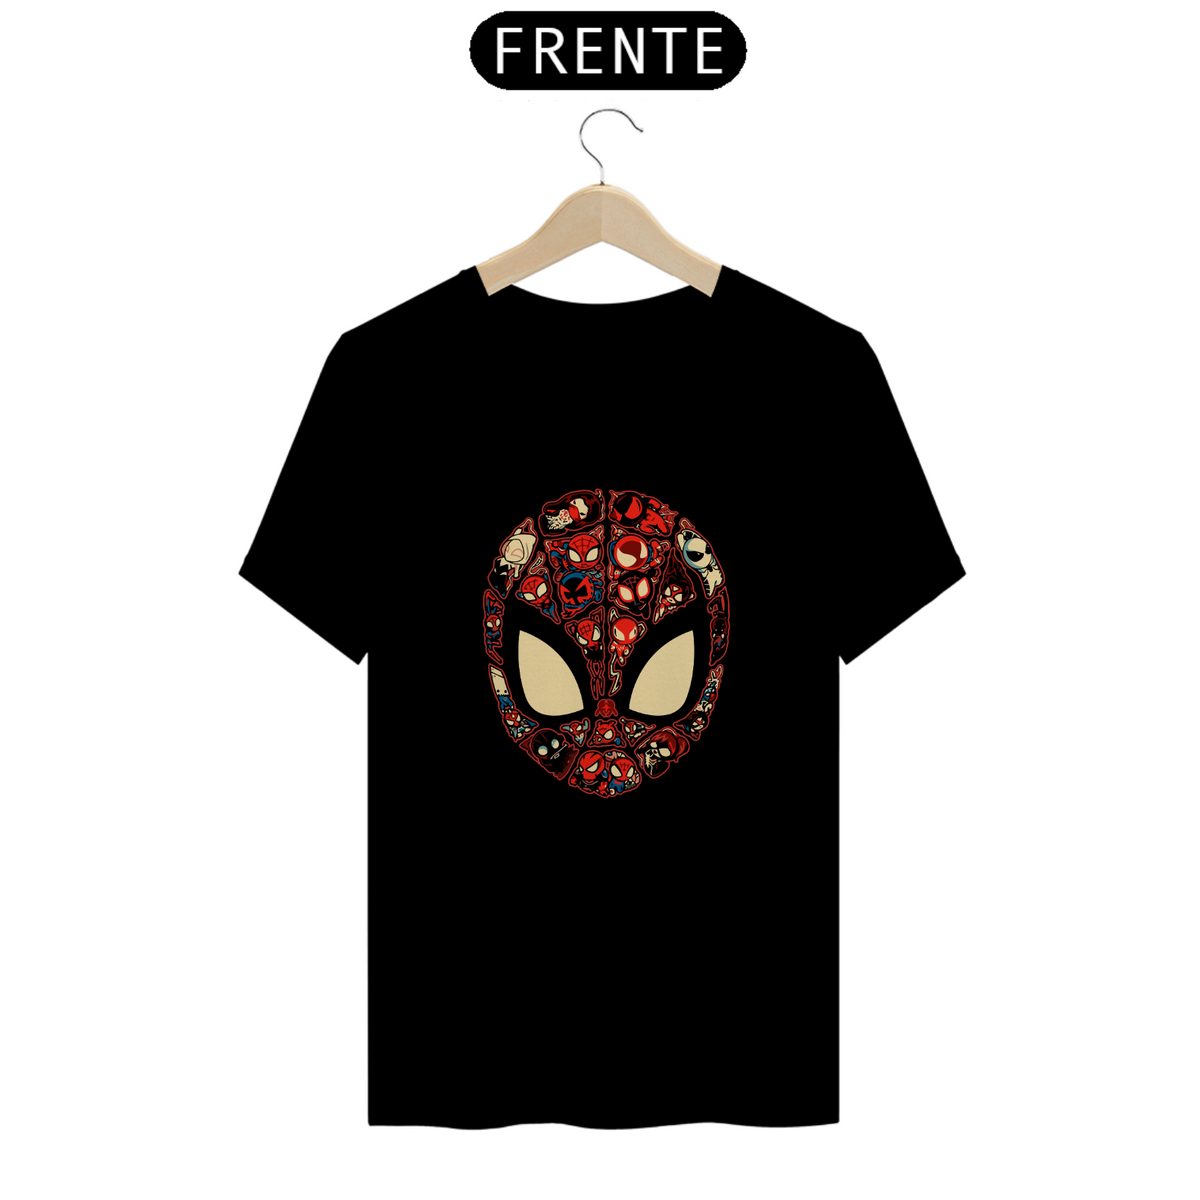 Nome do produto: Camisa Spider Man